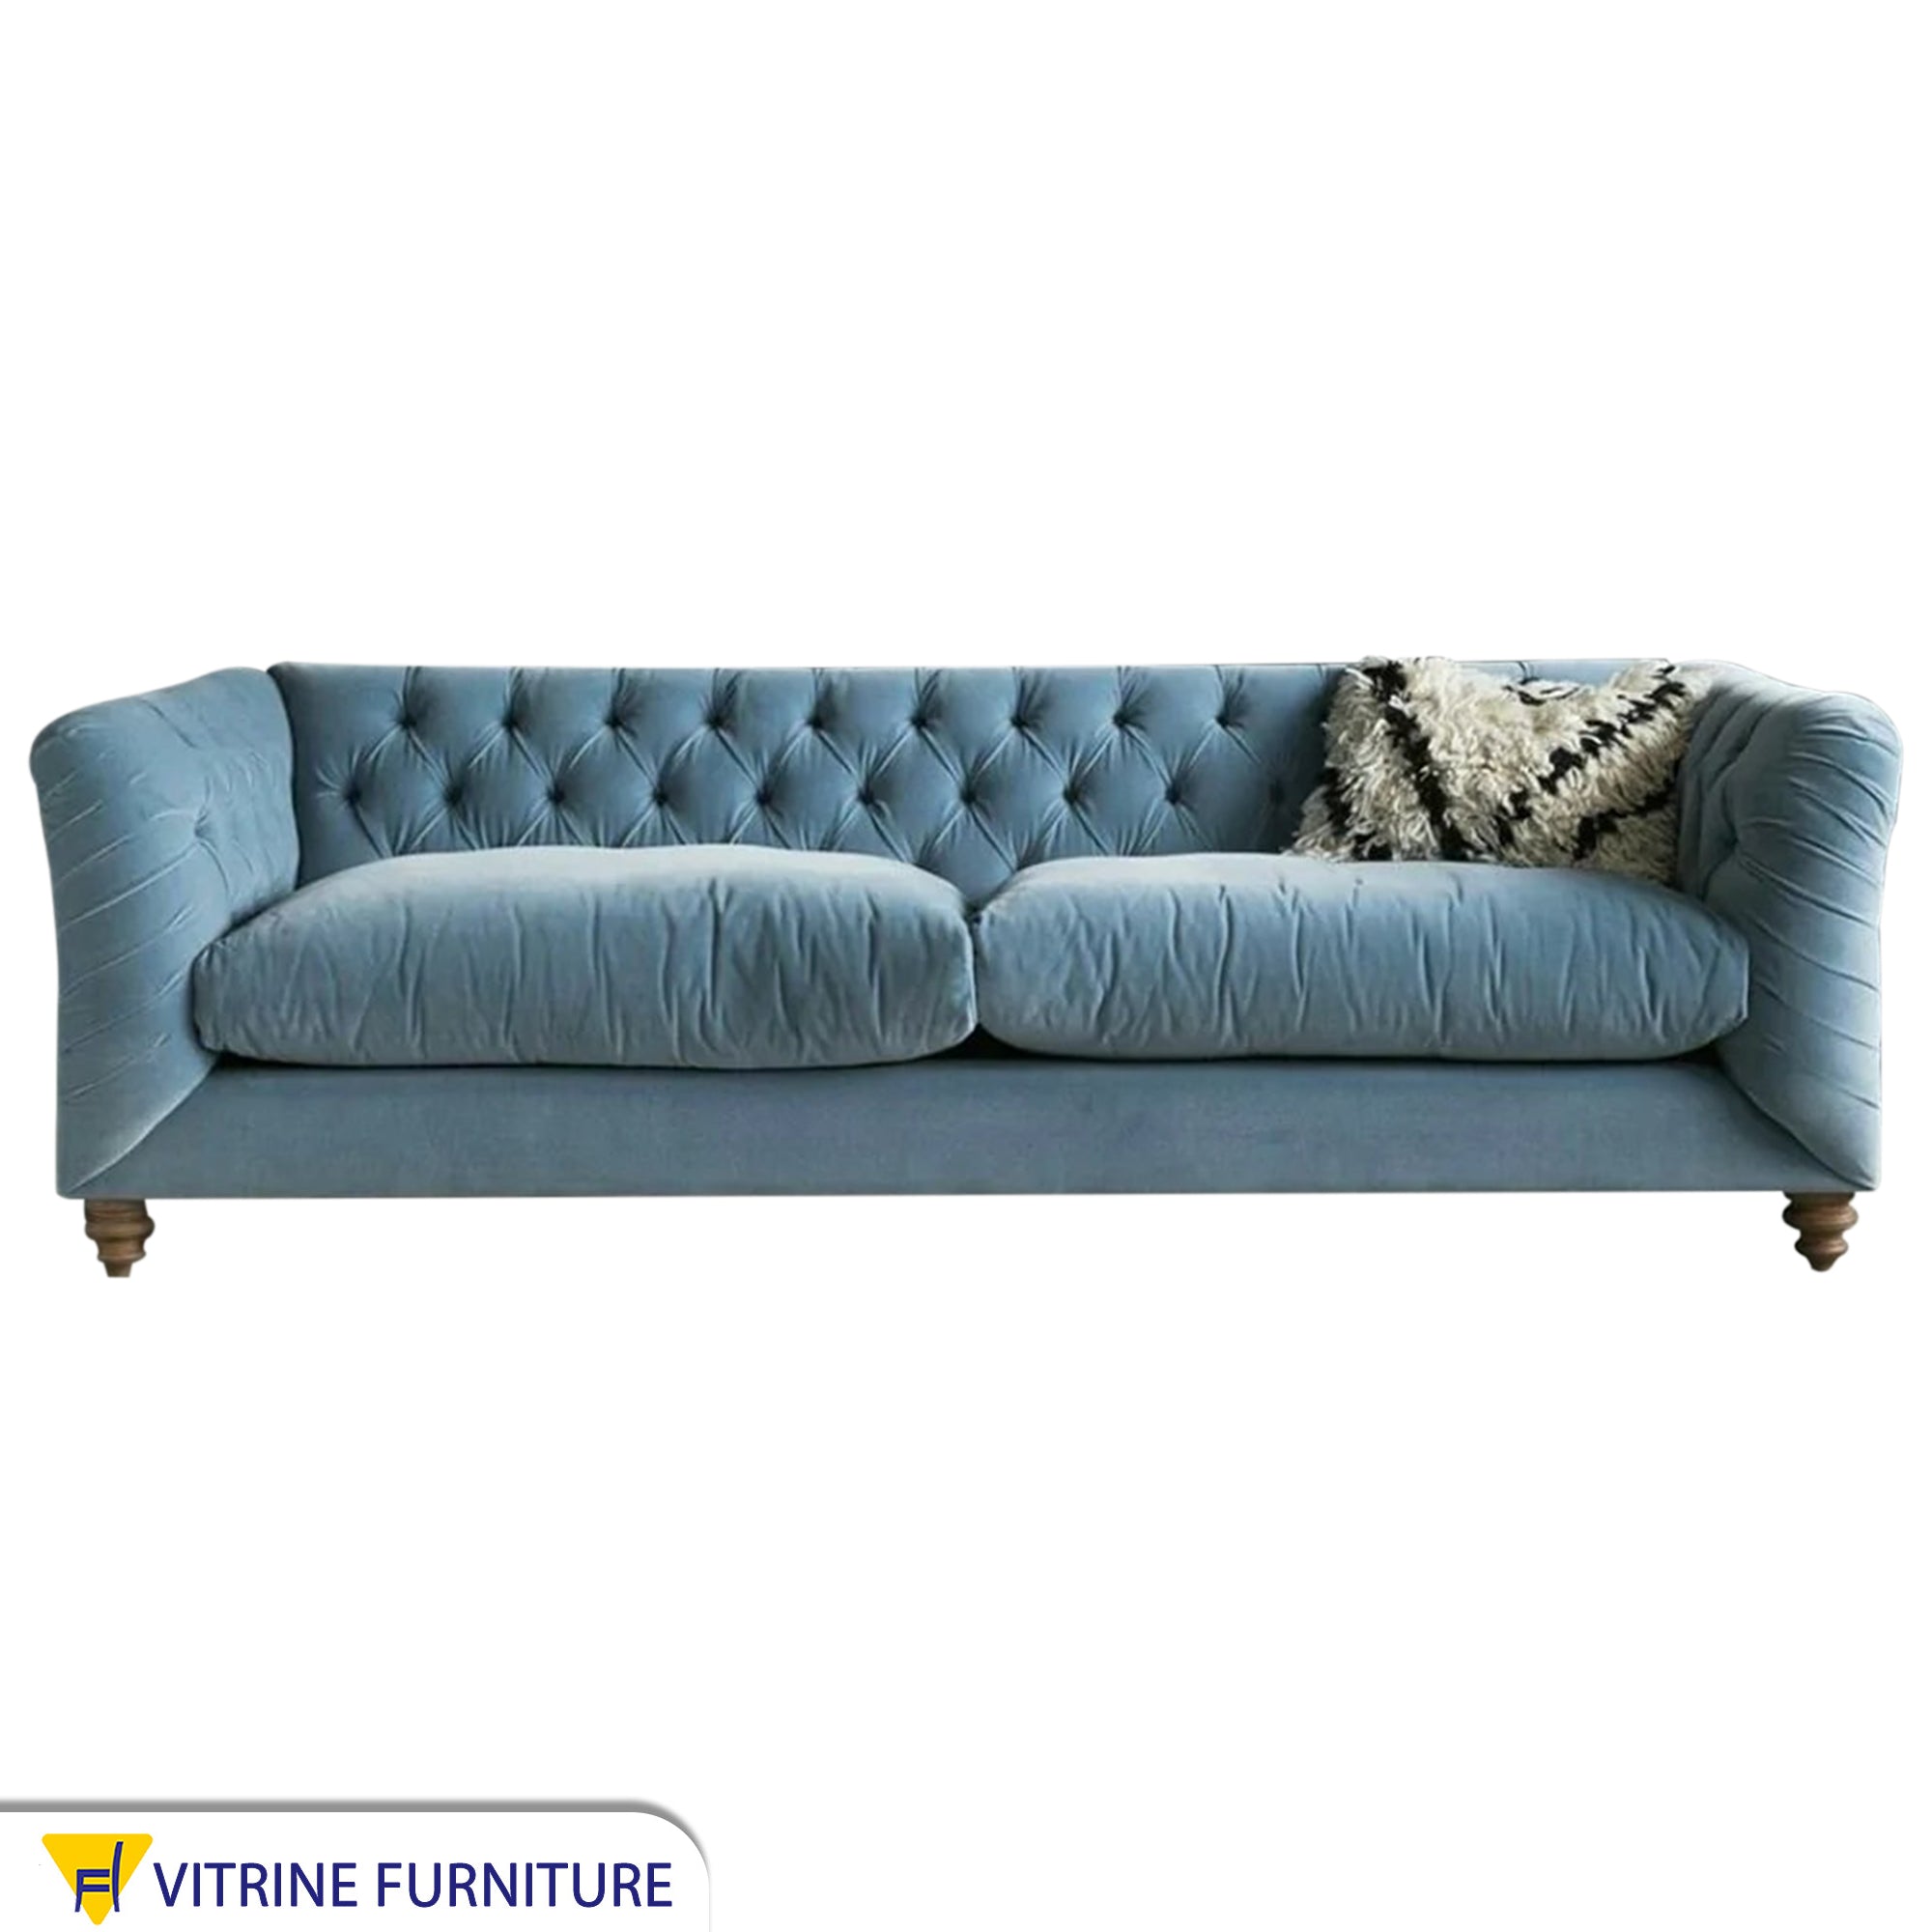 Baby Blue sofa for elegant living